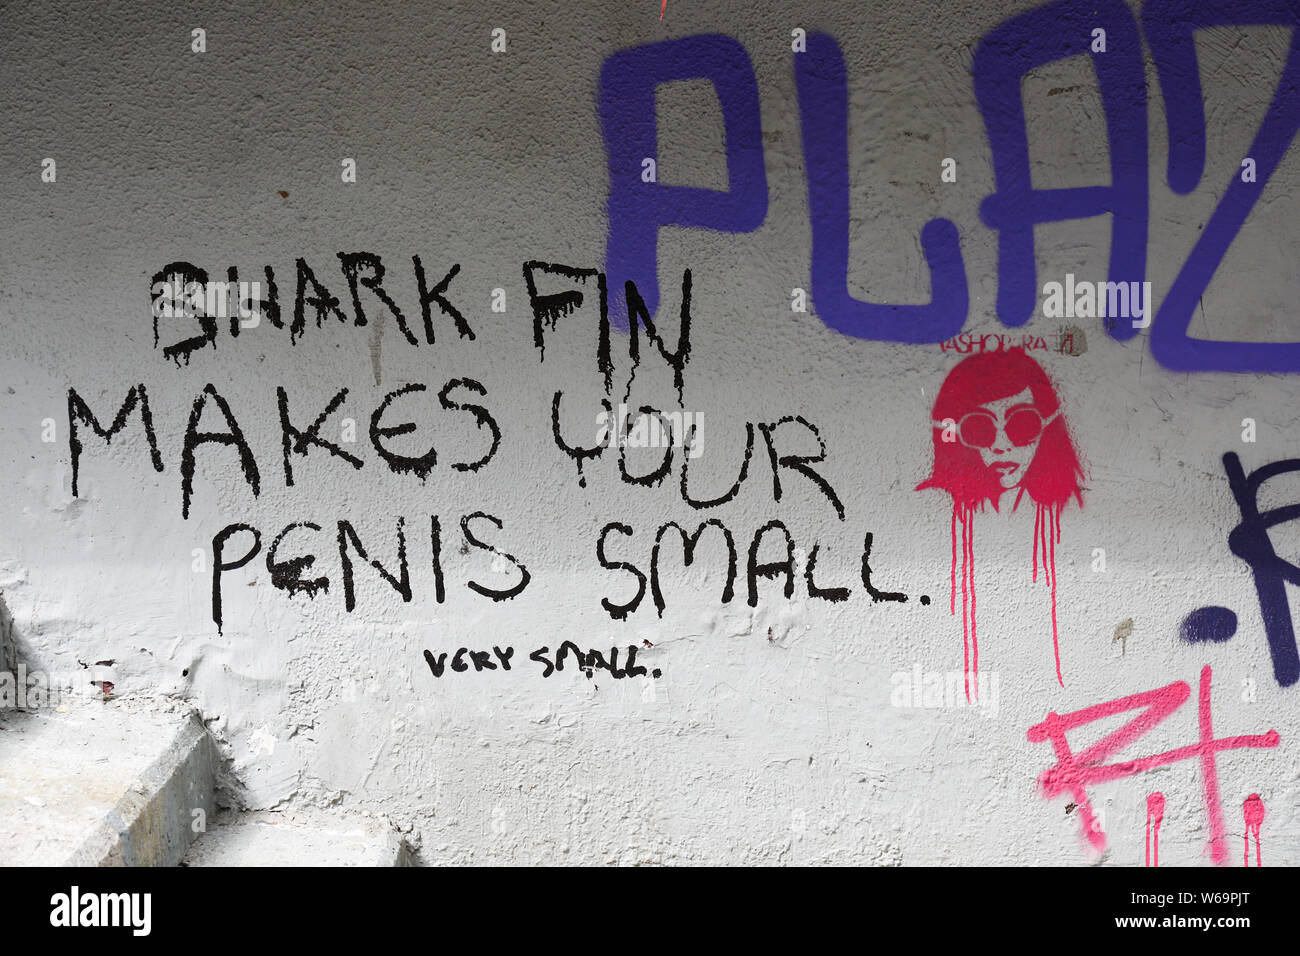 Anti shark fin soup writing on the wall in Sheung Wan , Hong Kong Stock Photo